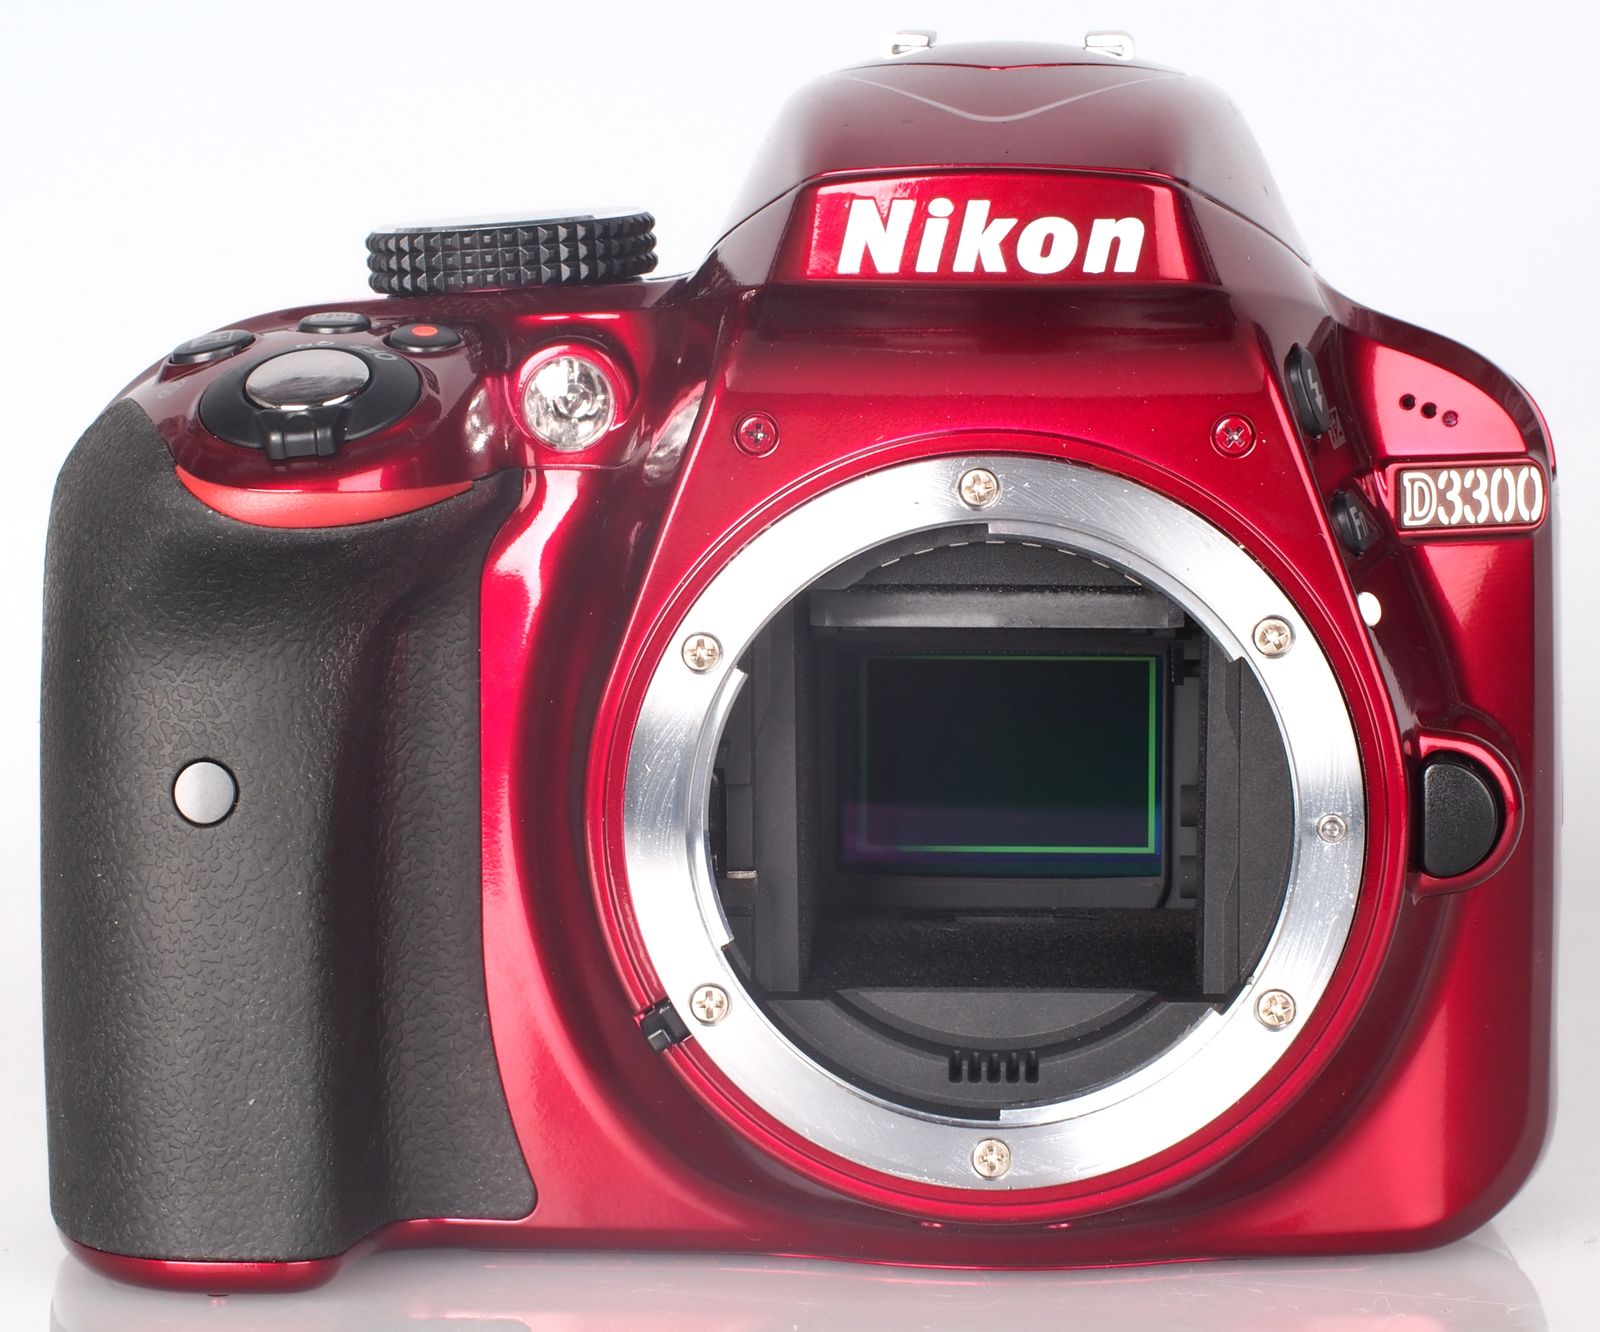 Nikon D3300 DSLR Review